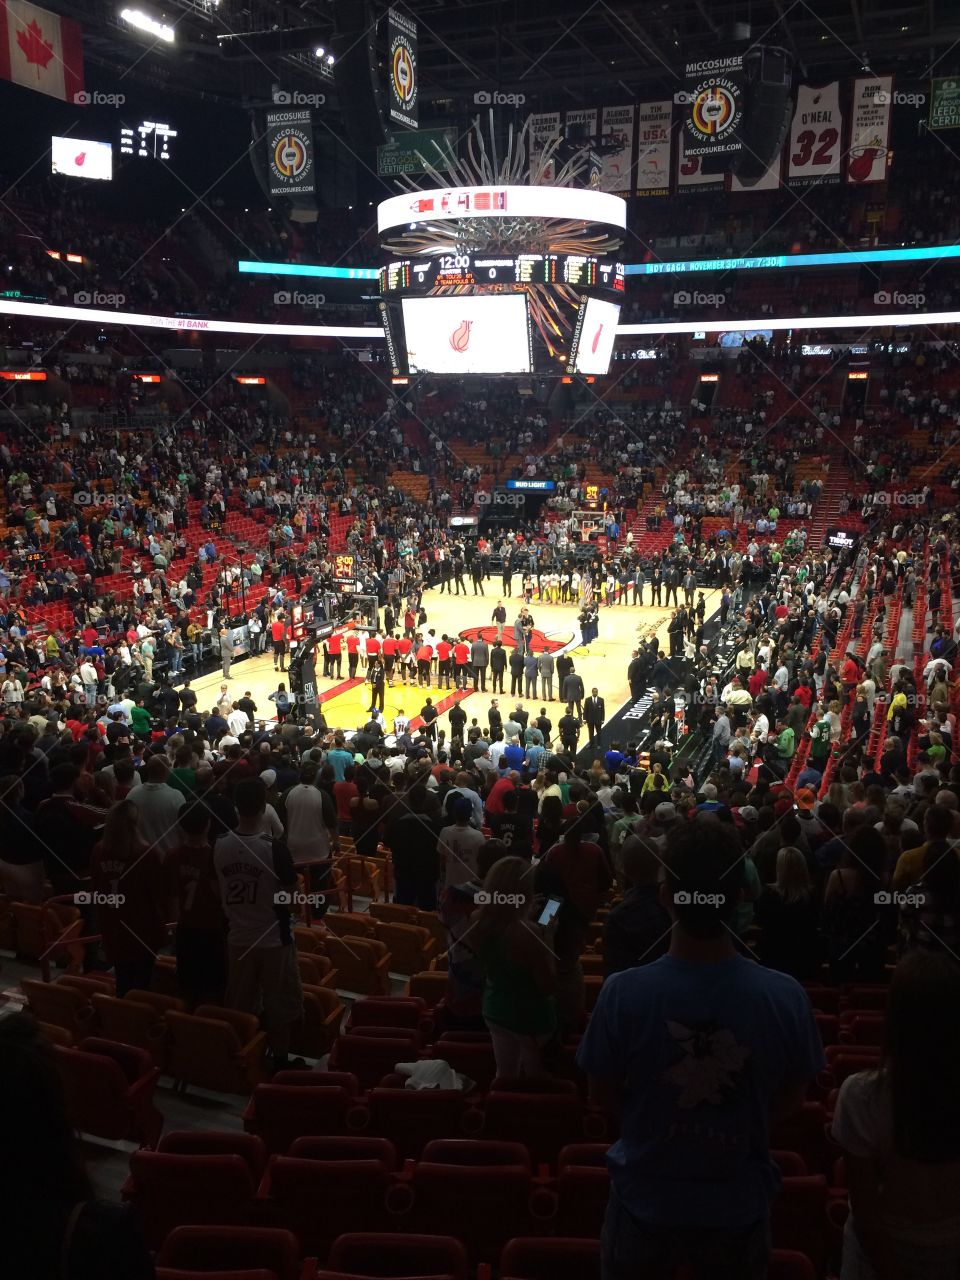 Miami Heat basketball game